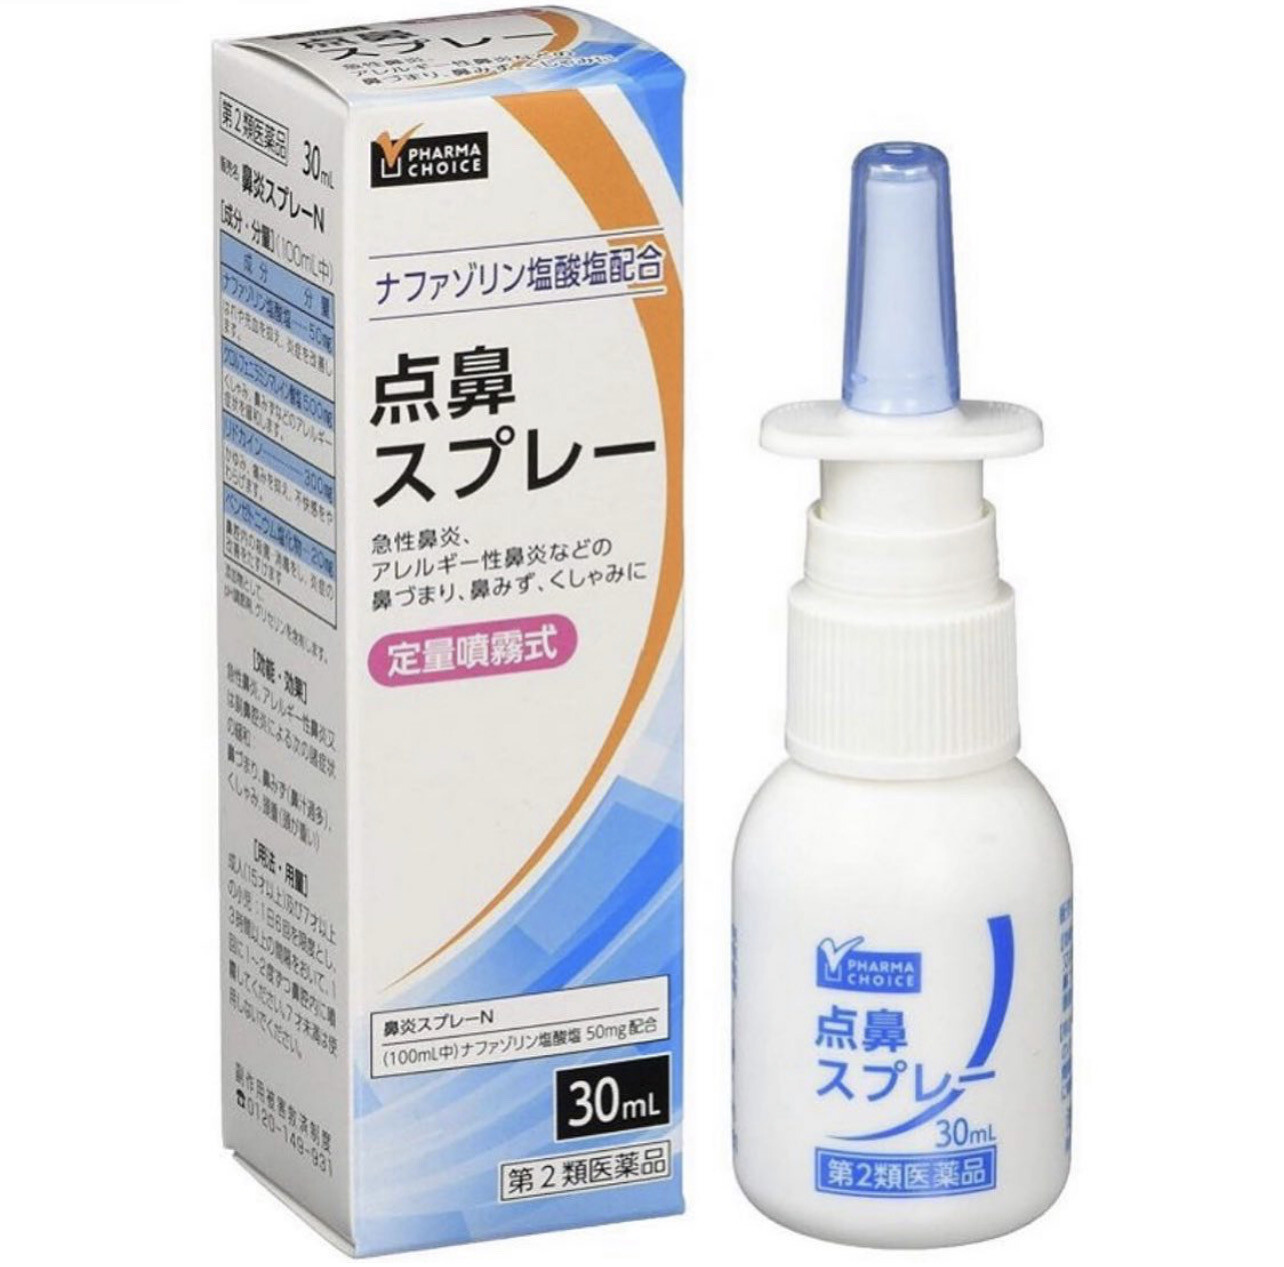 Спрей РНARMА СHOICE Rhinitis Spray N - эффективное средство при аллергическом и остром рините, а также при насморке, вызванном вирусными заболеваниями. 